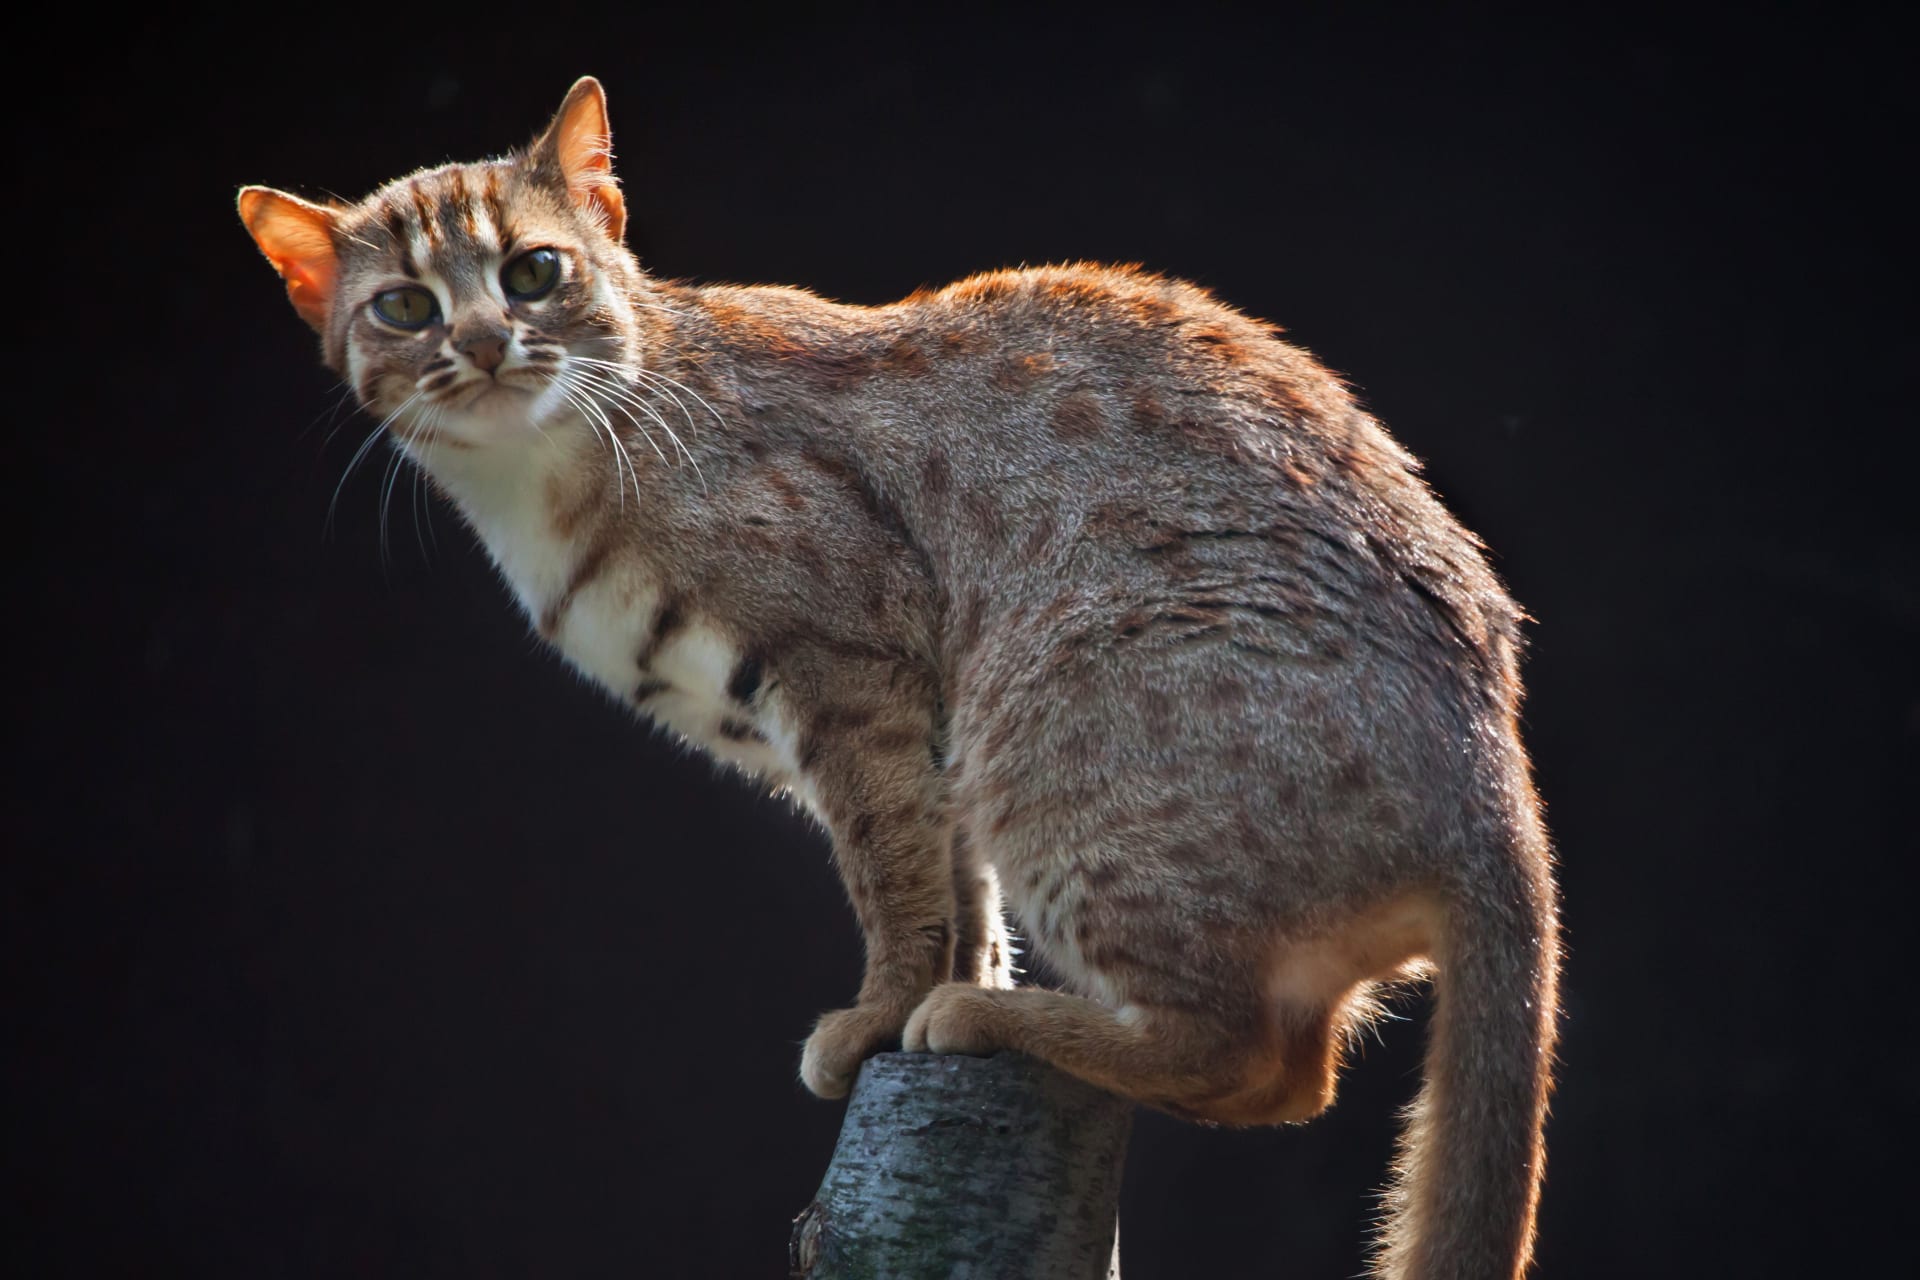 Kočka cejlonská - Prionailurus rubiginosus